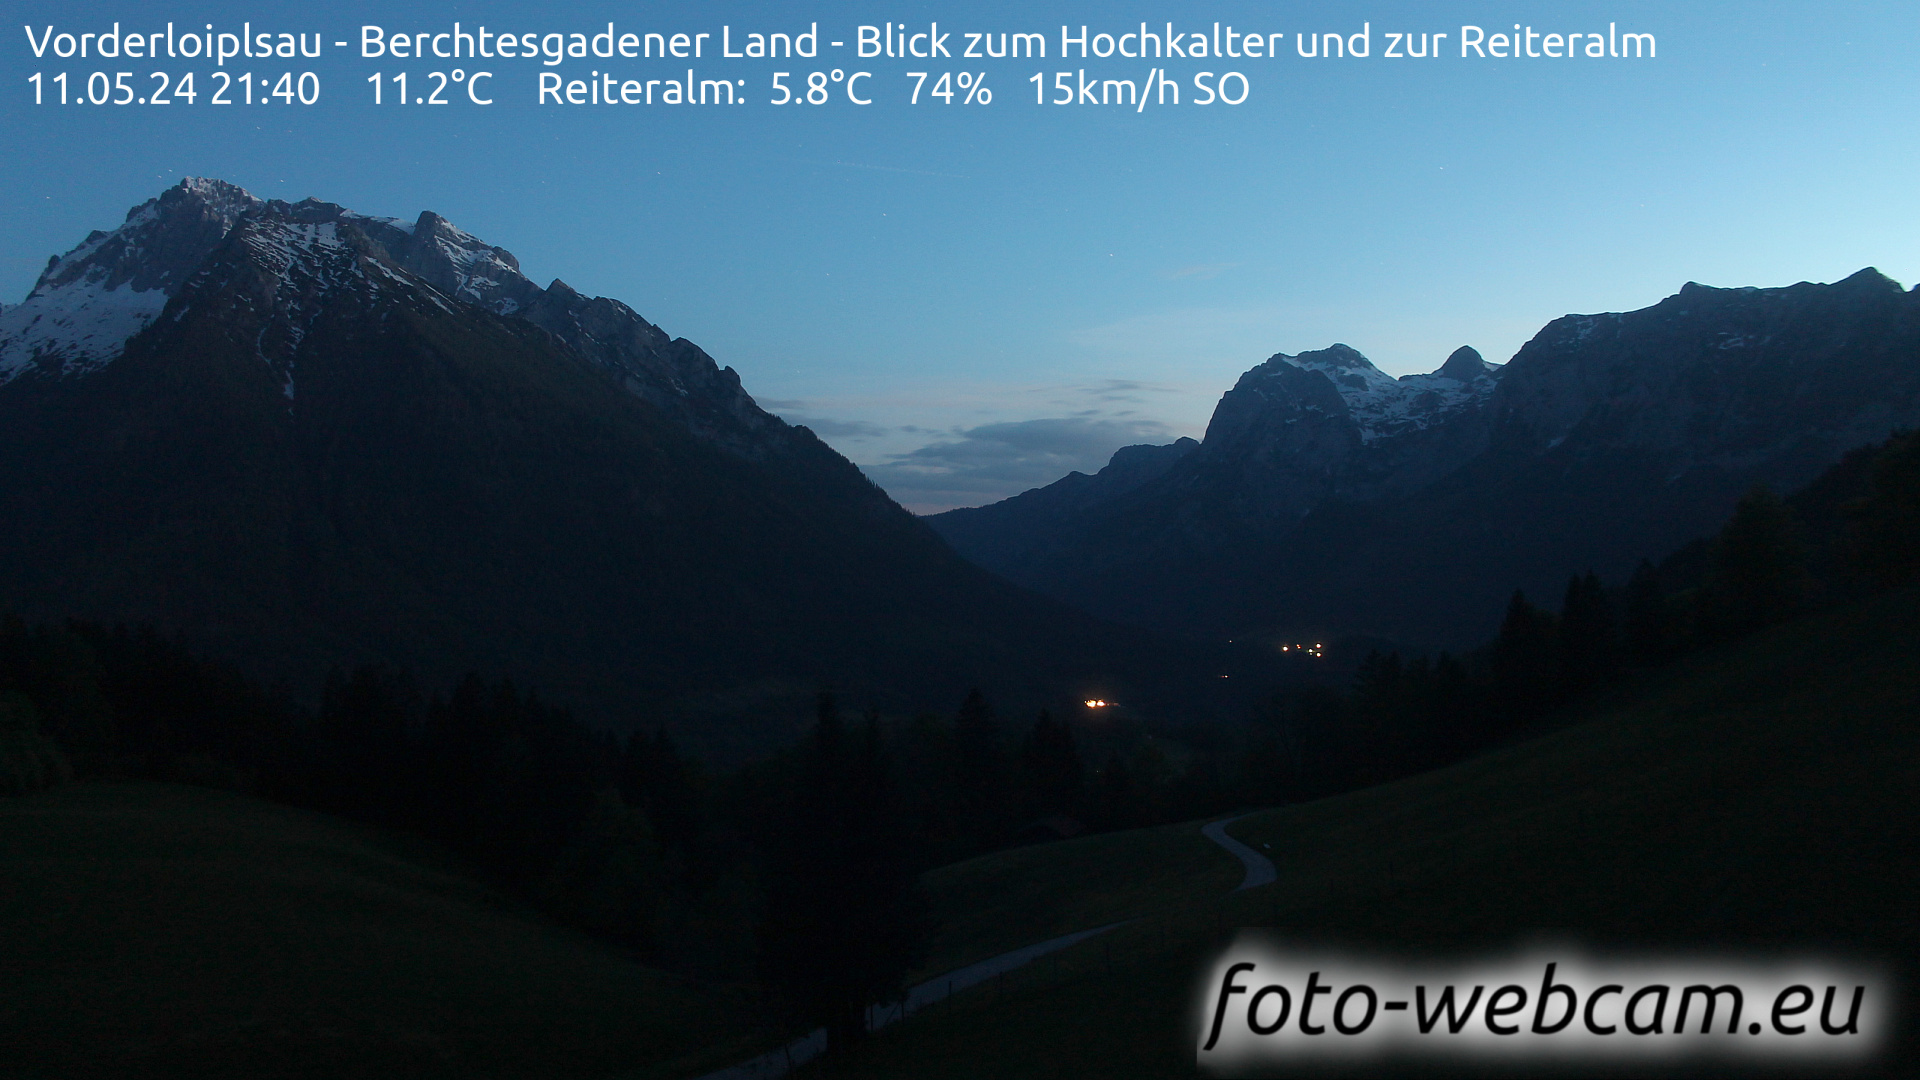 Ramsau bei Berchtesgaden Ons. 21:48